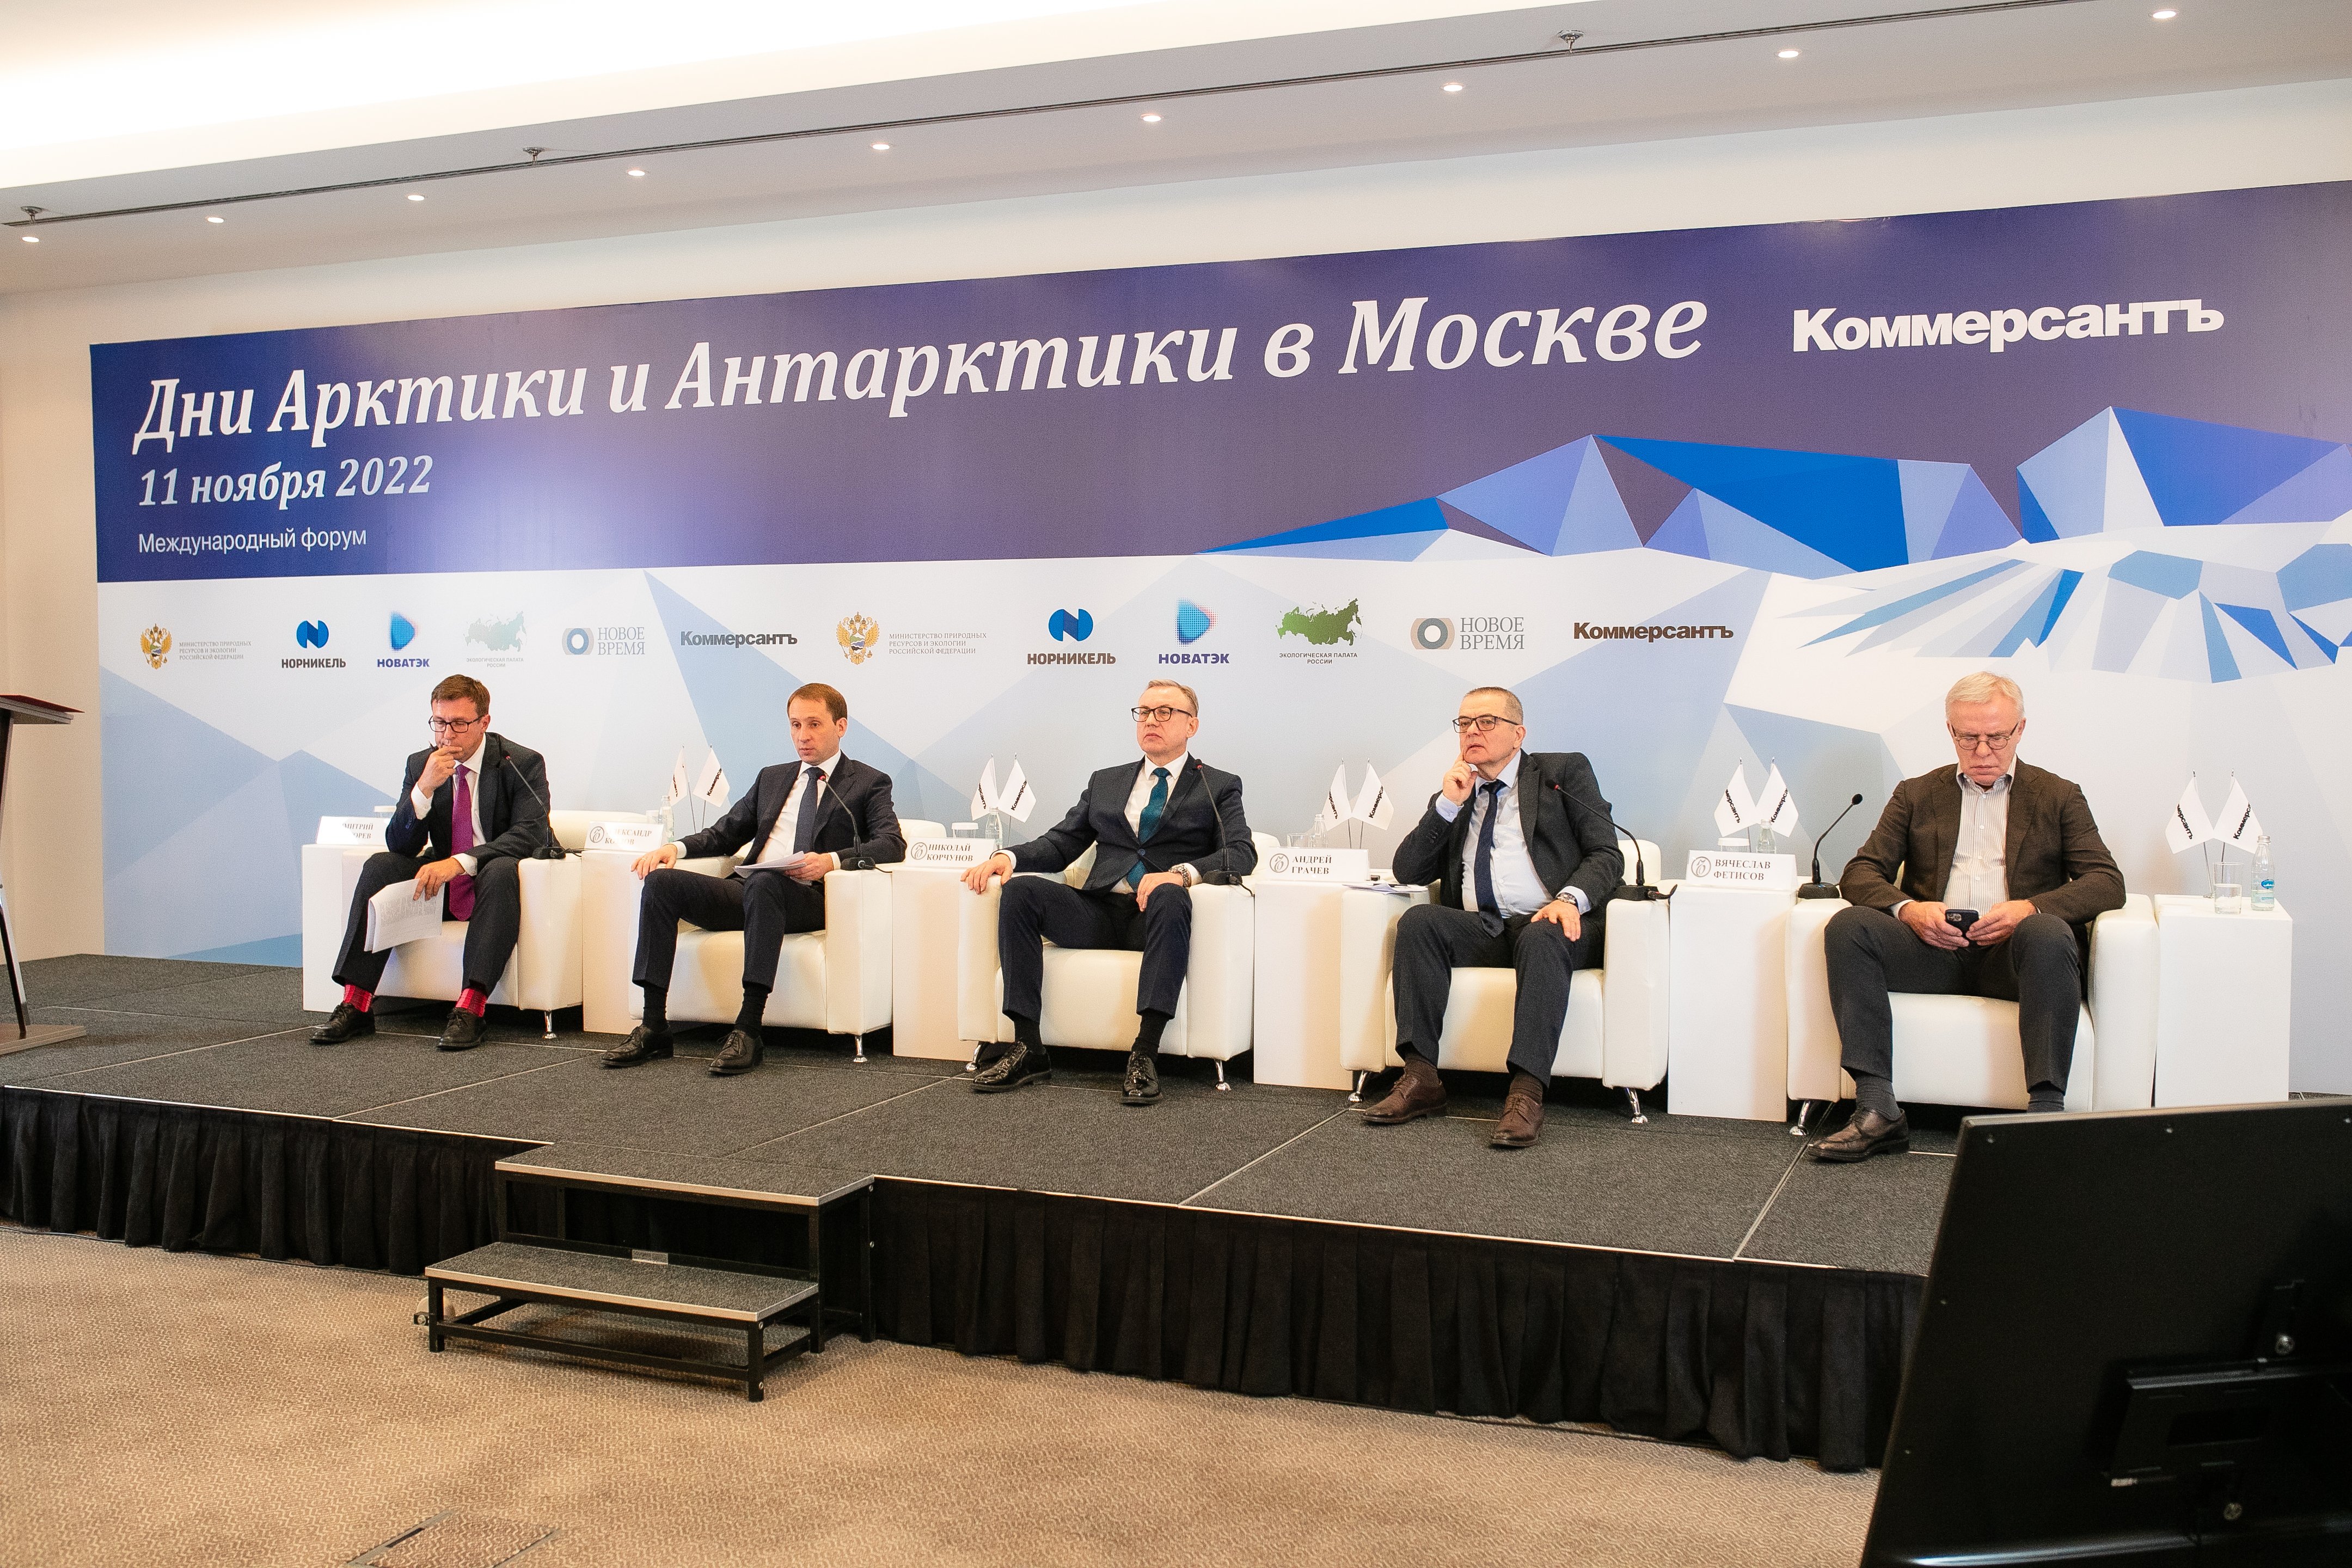 На форуме «Дни Арктики и Антарктики в Москве» обсудили вопросы  арктического климата и науки